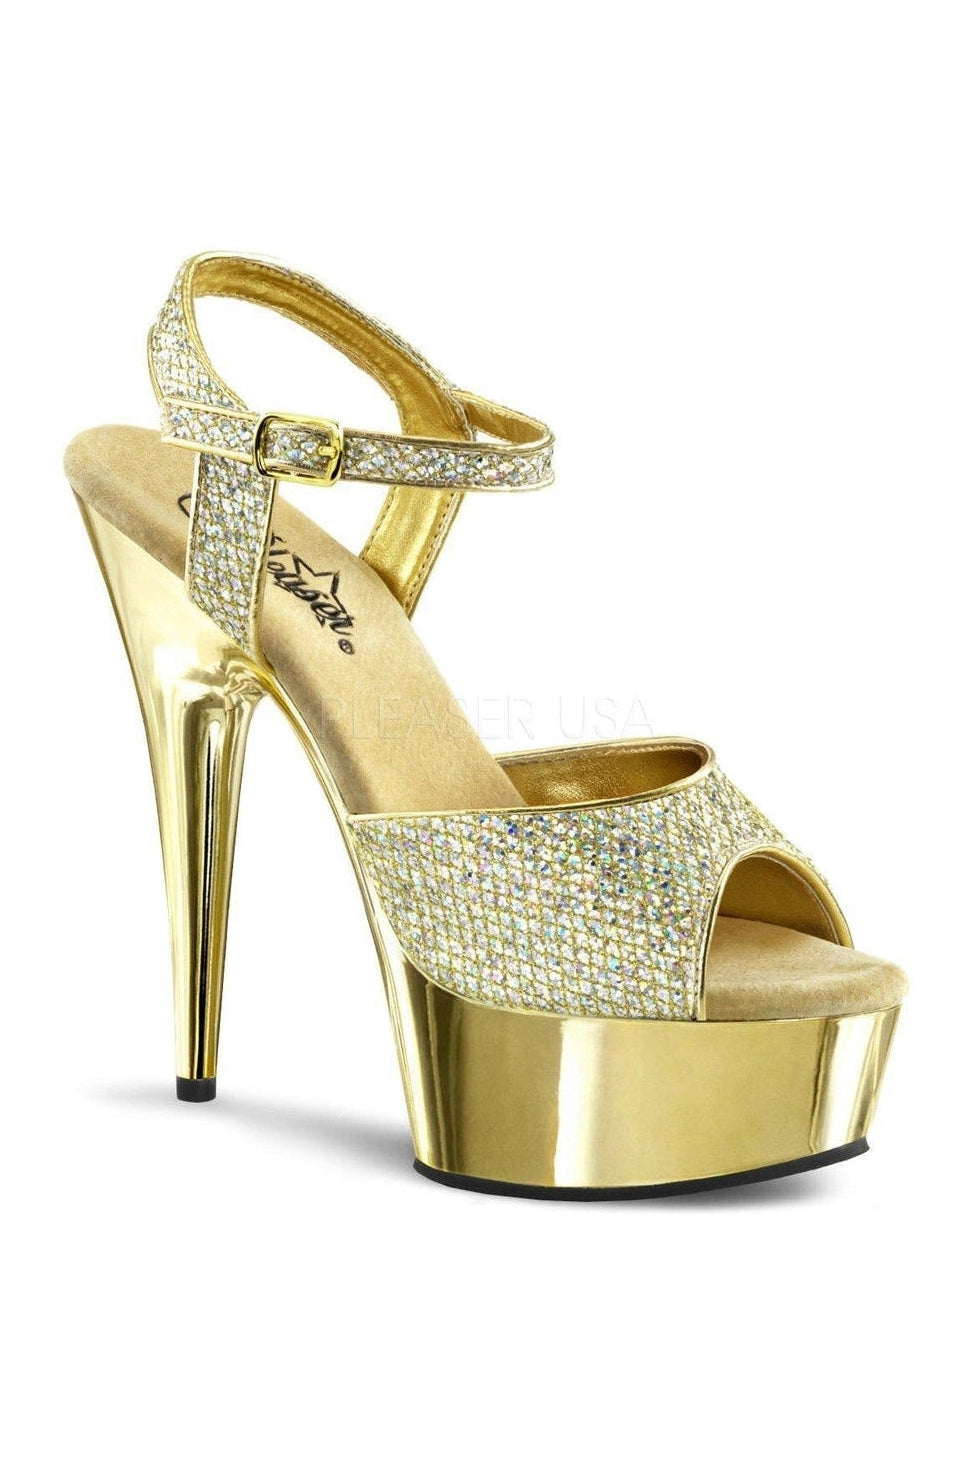 DELIGHT-609G Platform Sandal | Gold Glitter-Pleaser-Gold-Sandals-SEXYSHOES.COM